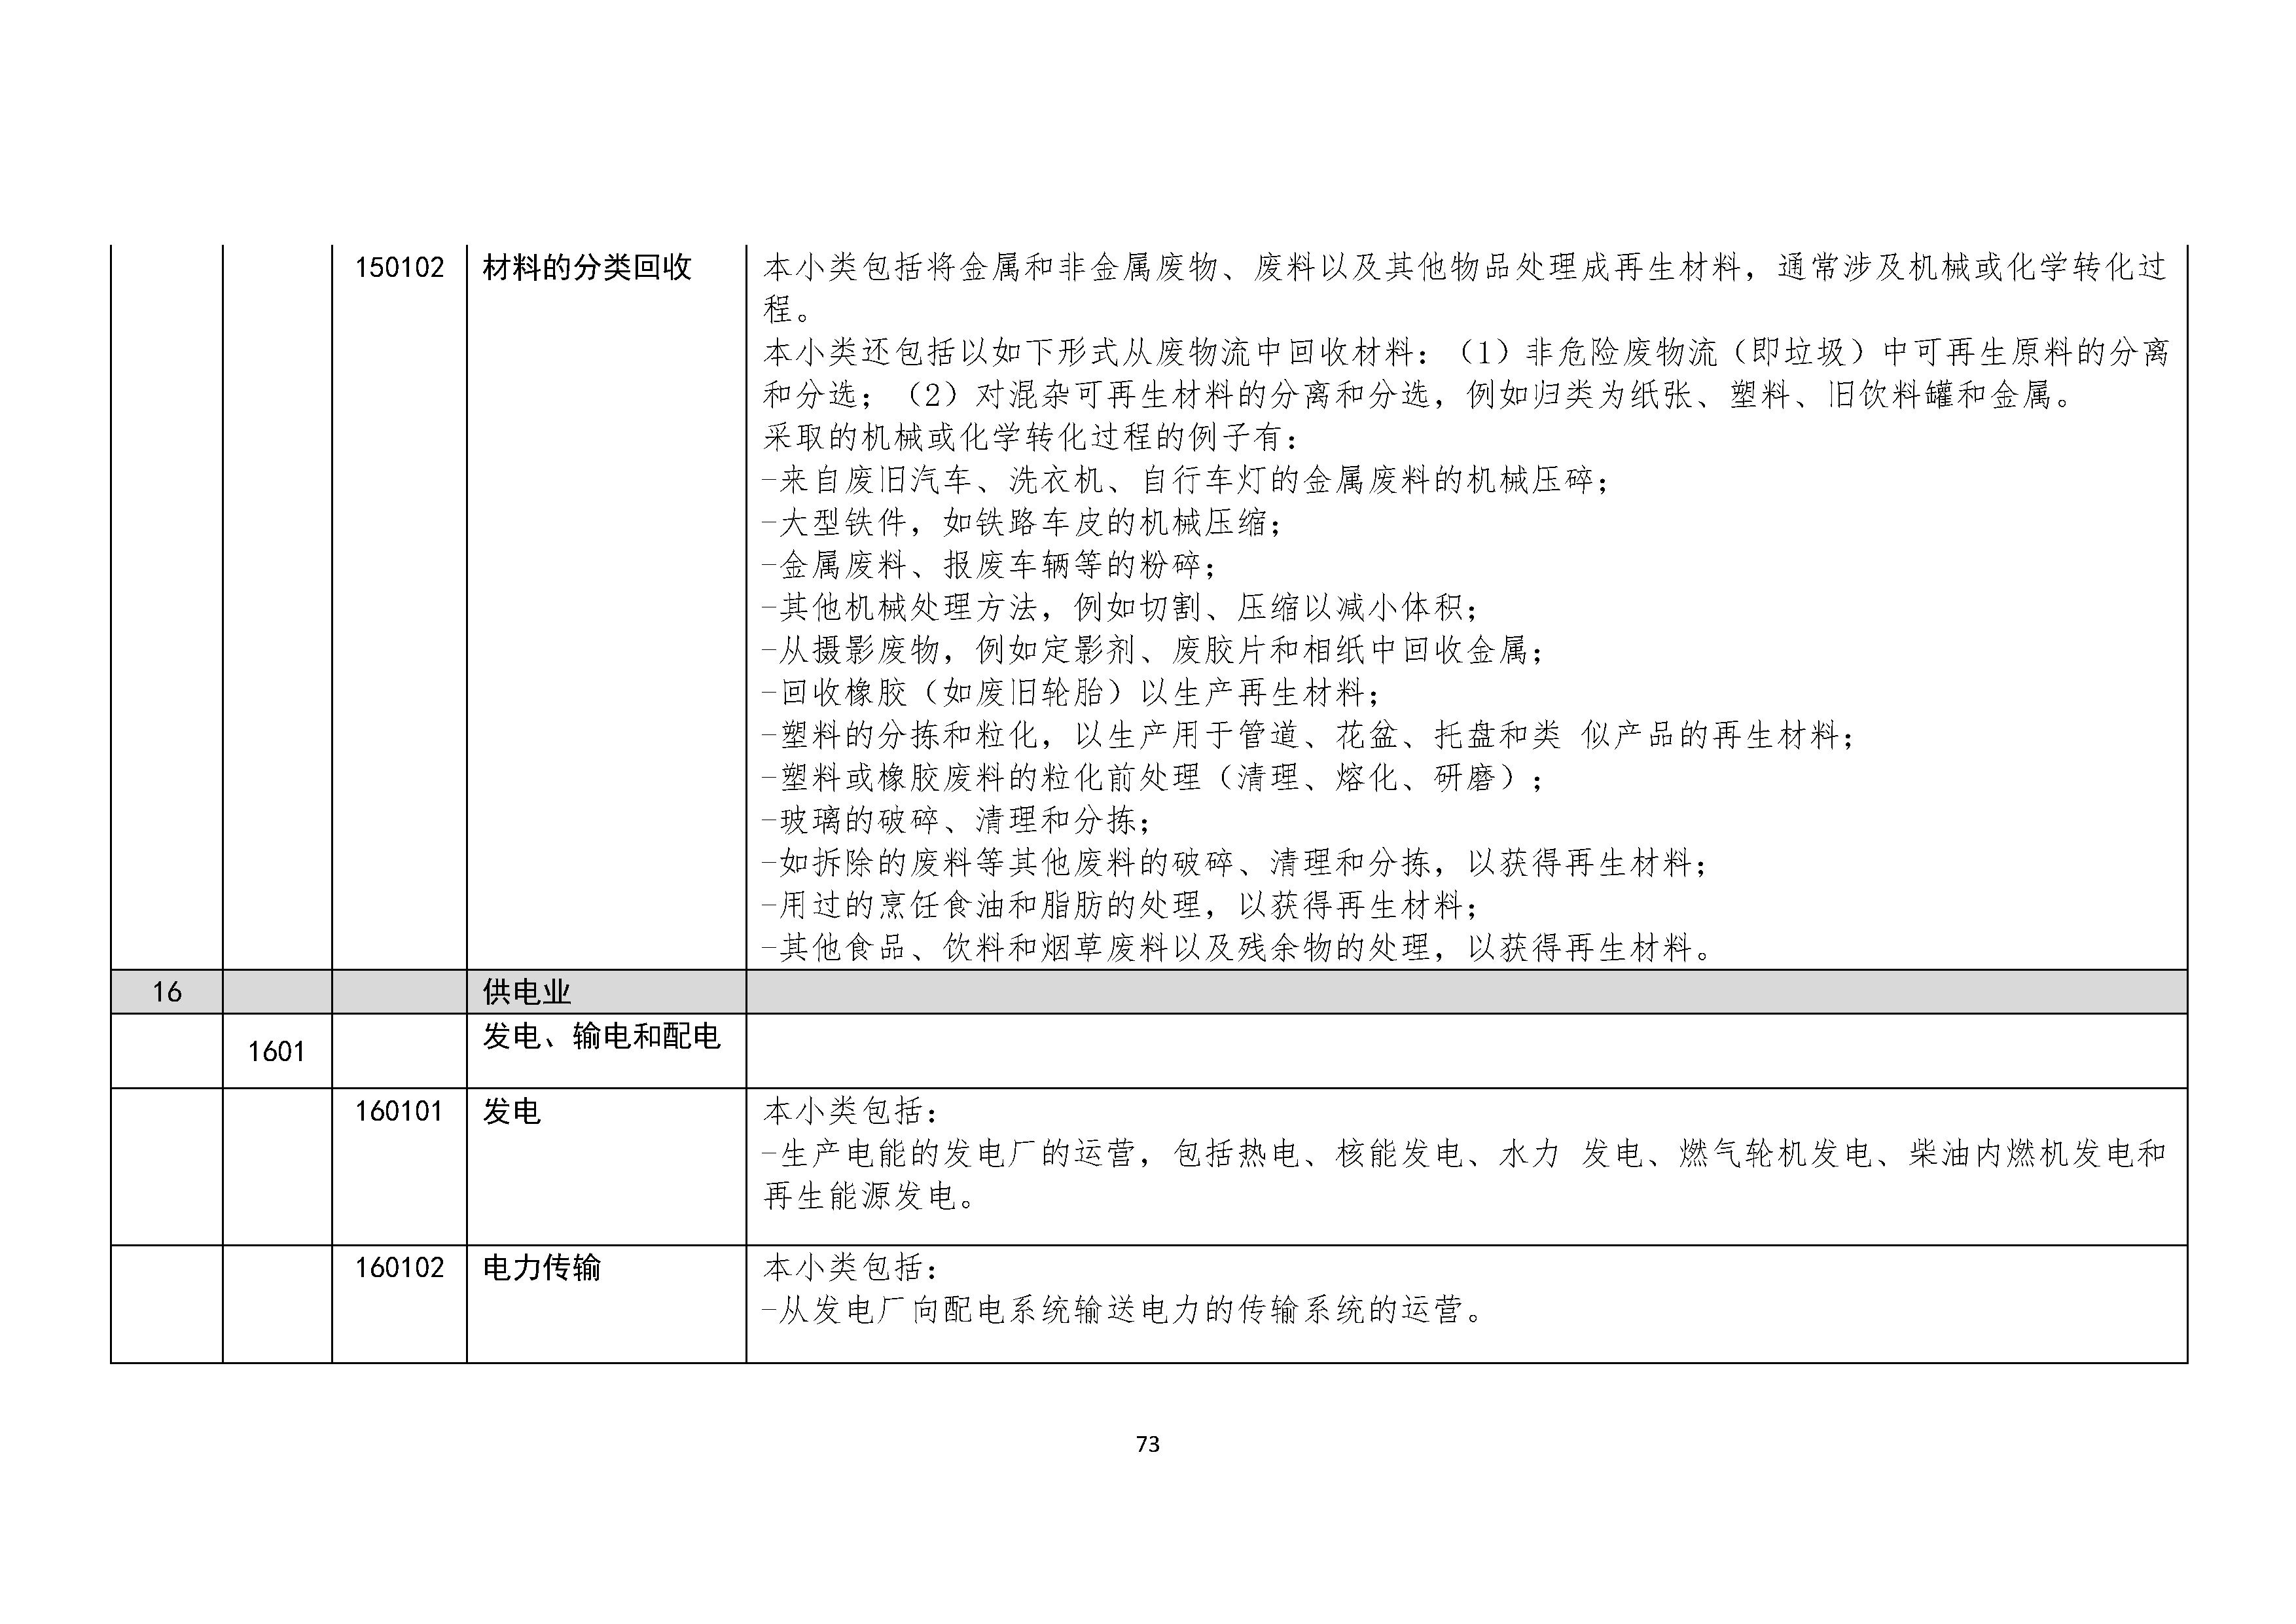 B.6《中国核能行业协会供应商评价供应商分类及产品专业范围划分规定》_页面_074.png